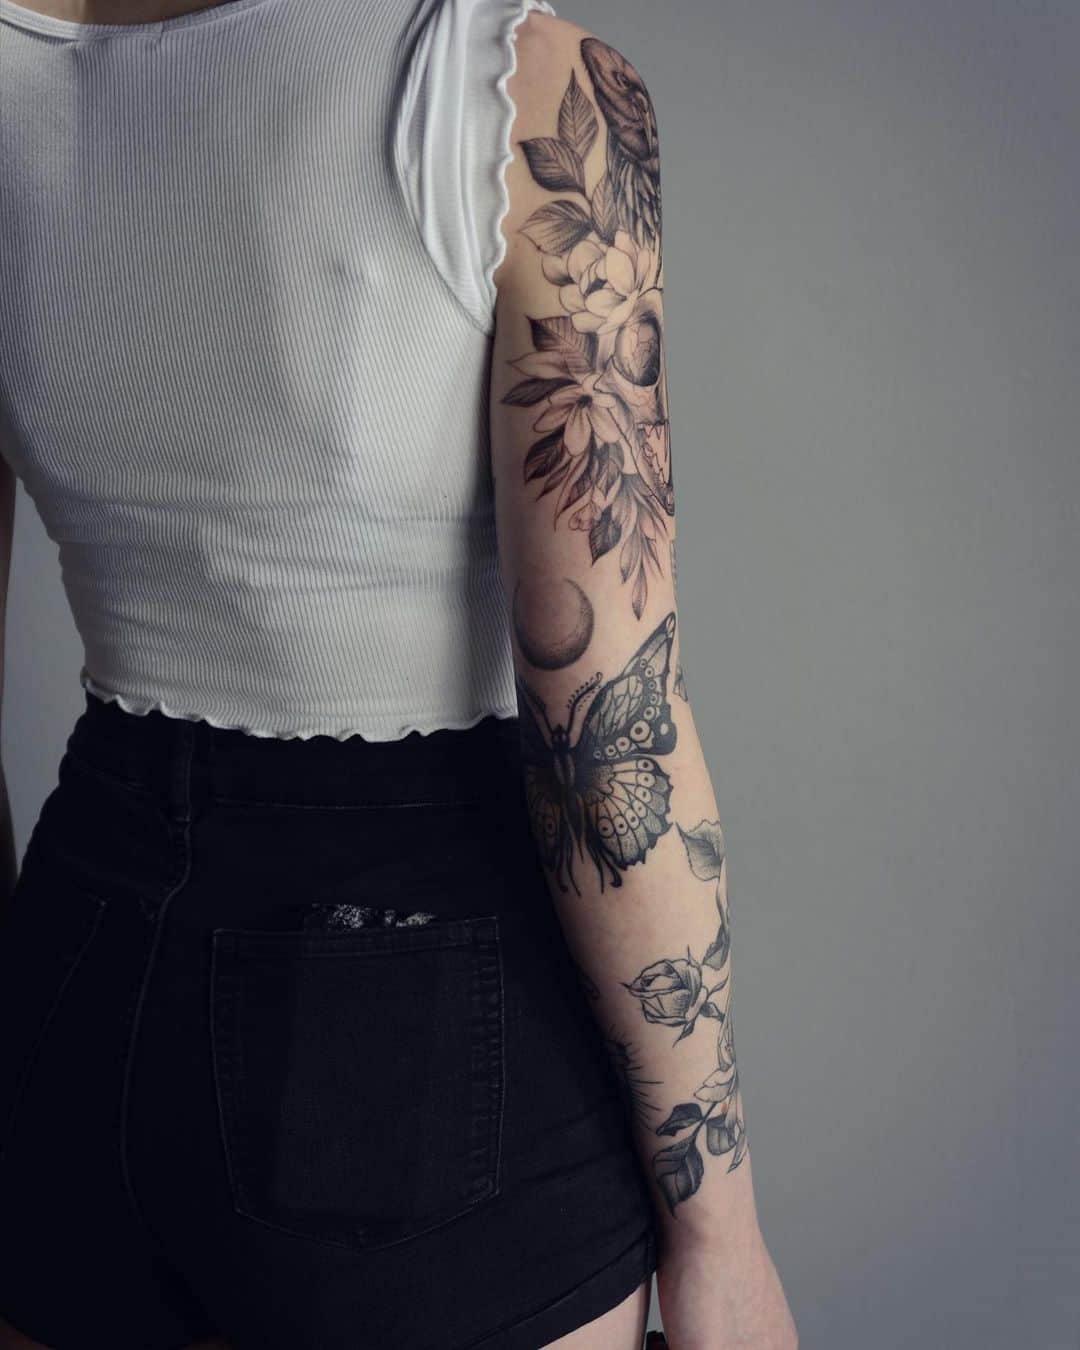 Butterfly Tattoo, saved tattoo, 13